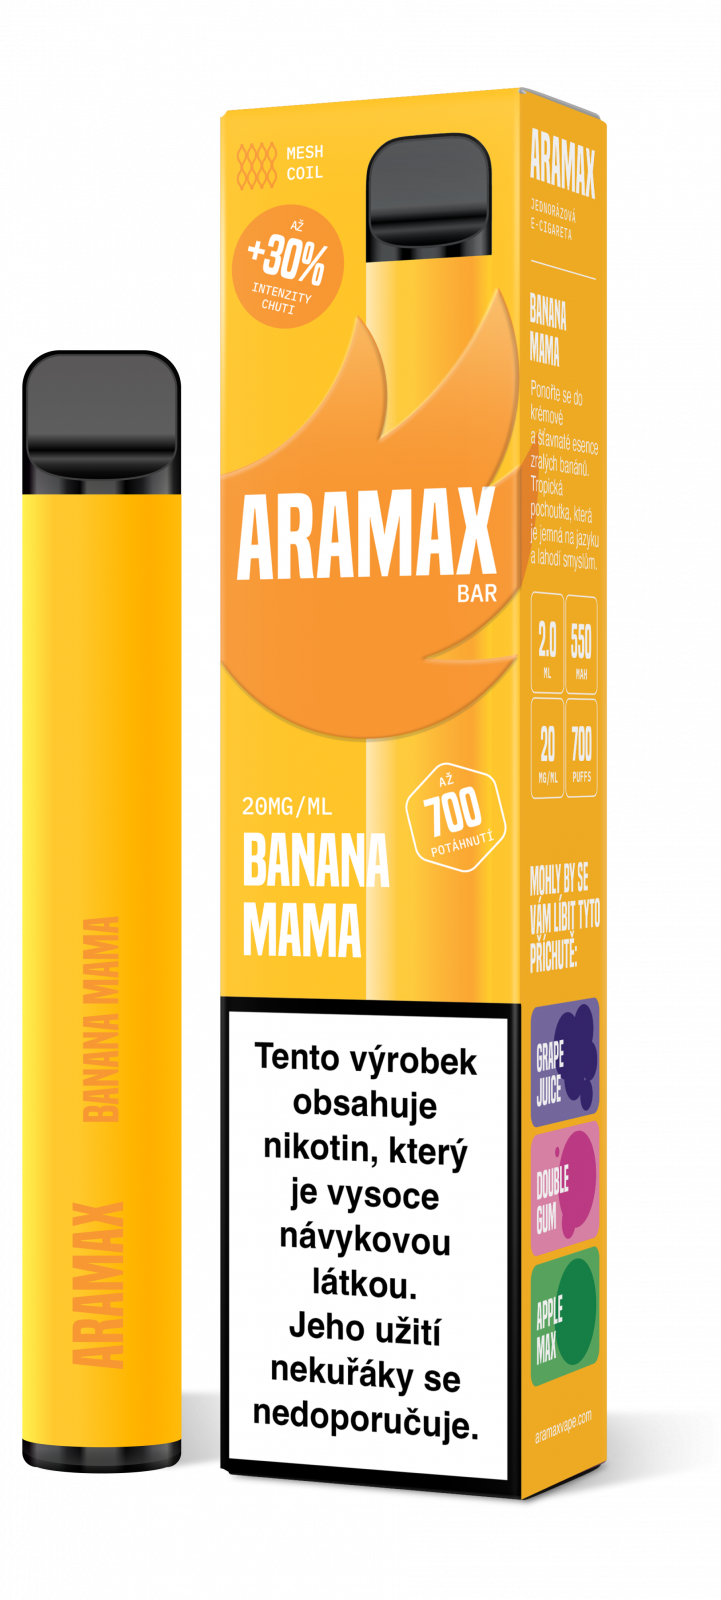 BANANA MAMA 20mg/ml - Aramax Bar 700 - jednorazová e-cigareta